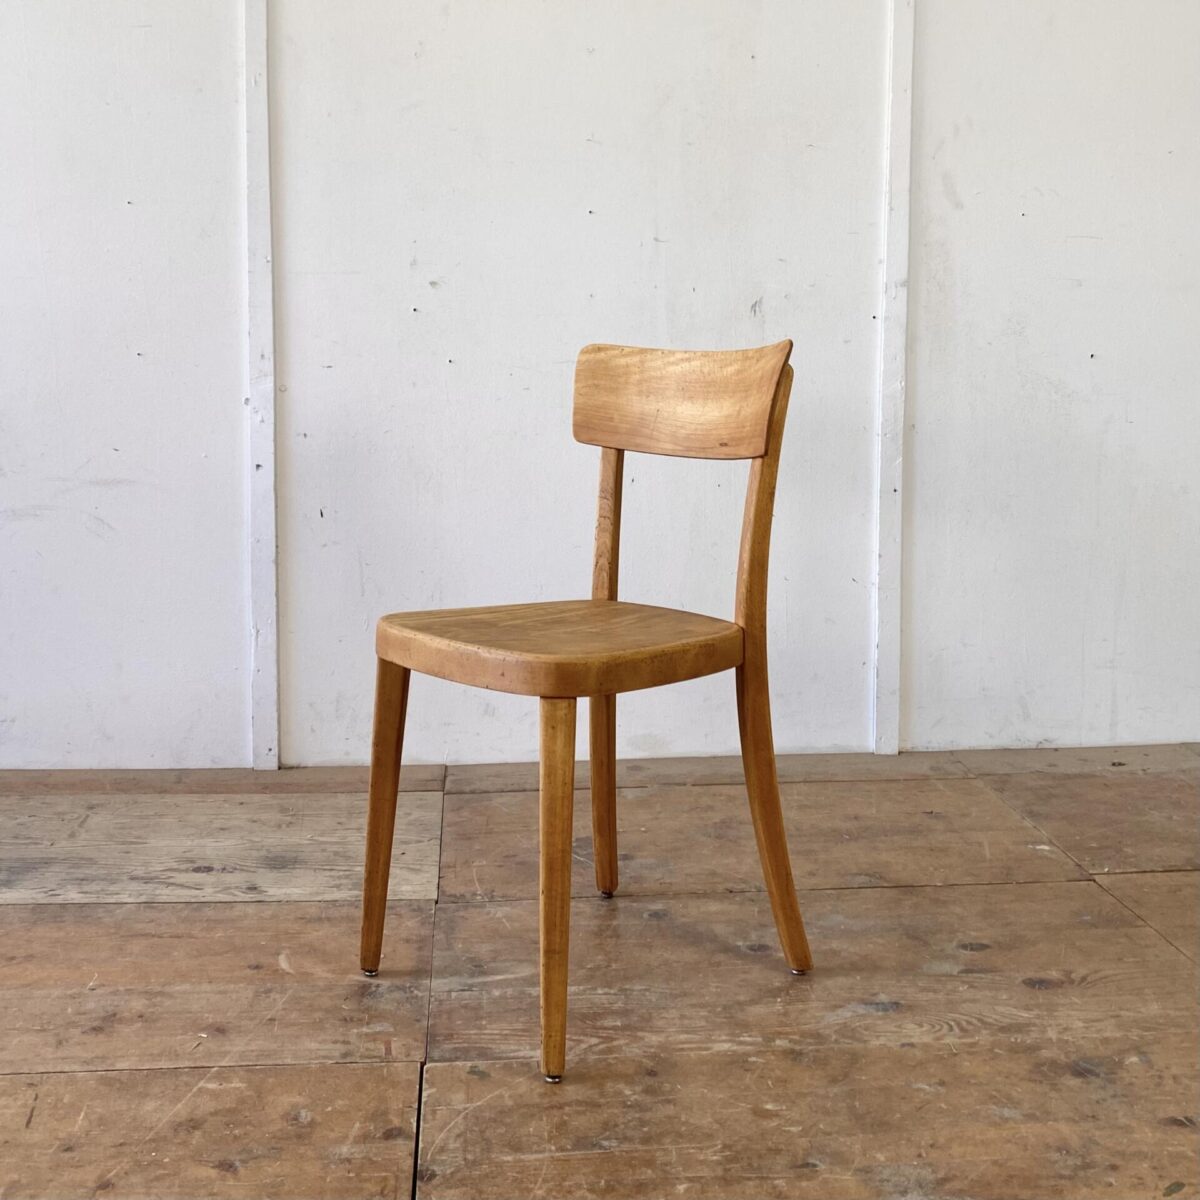 Deuxieme.shop Horgen Glarus Stühle. Verschiedene Beizenstühle, geölt. Preis pro Stuhl zwischen 350-480.- Die Stühle sind in stabilem restaurierten Zustand, die Holzoberflächen sind geschliffen und geölt, leichte Alterspatina. Vier davon sind von Horgenglarus, und teilweise mehrere Stück vorhanden. 